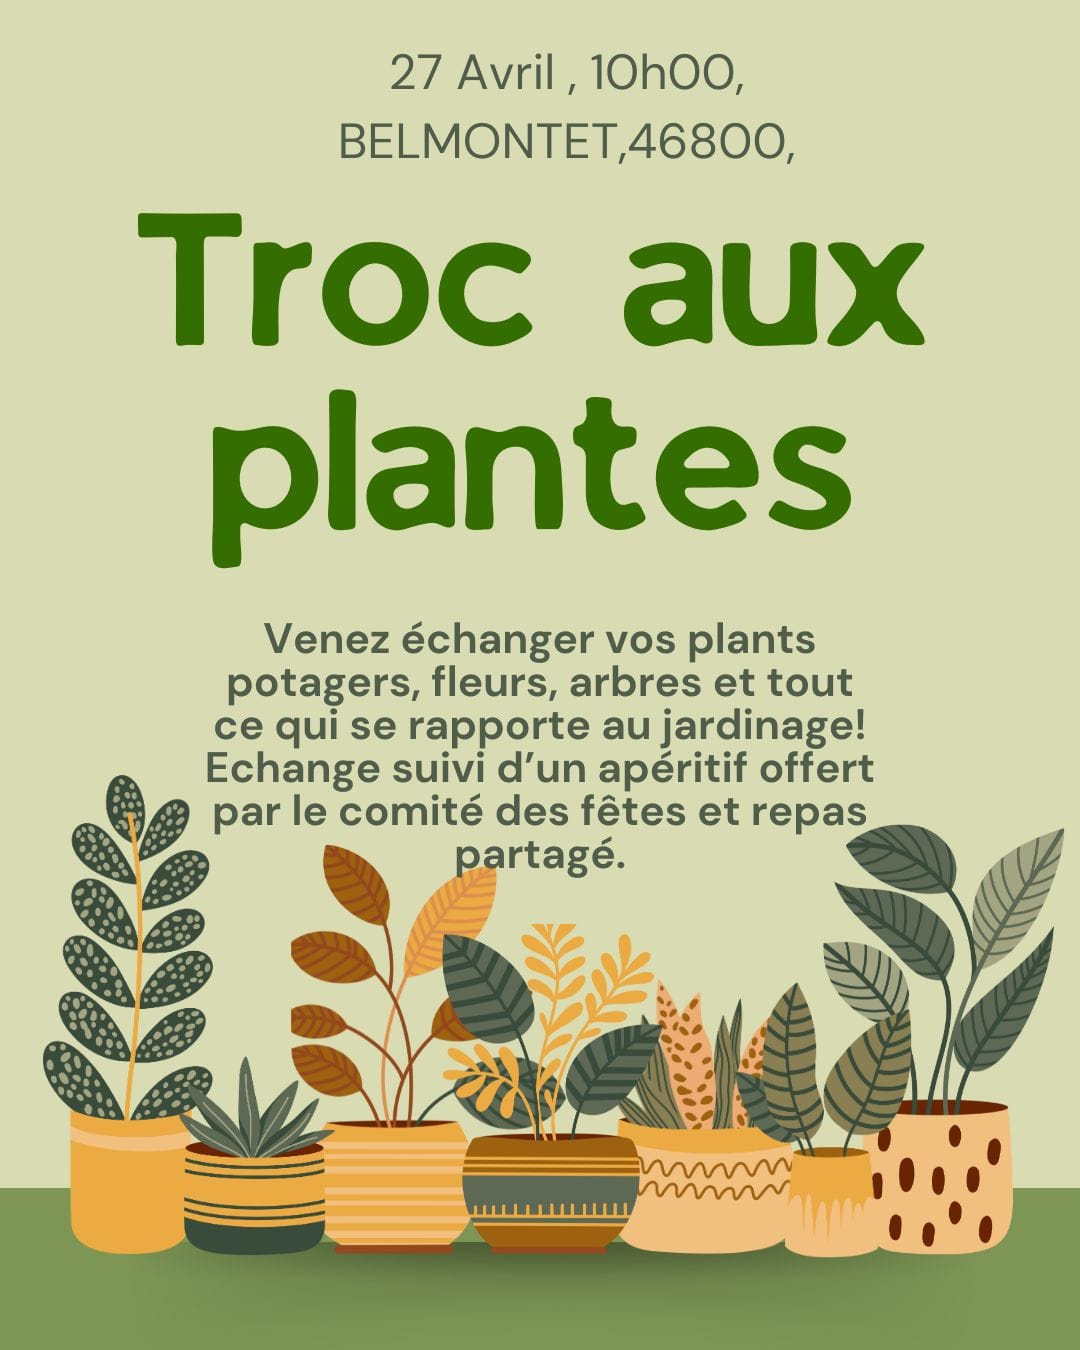 Figeac : Troc aux plantes à Belmontet